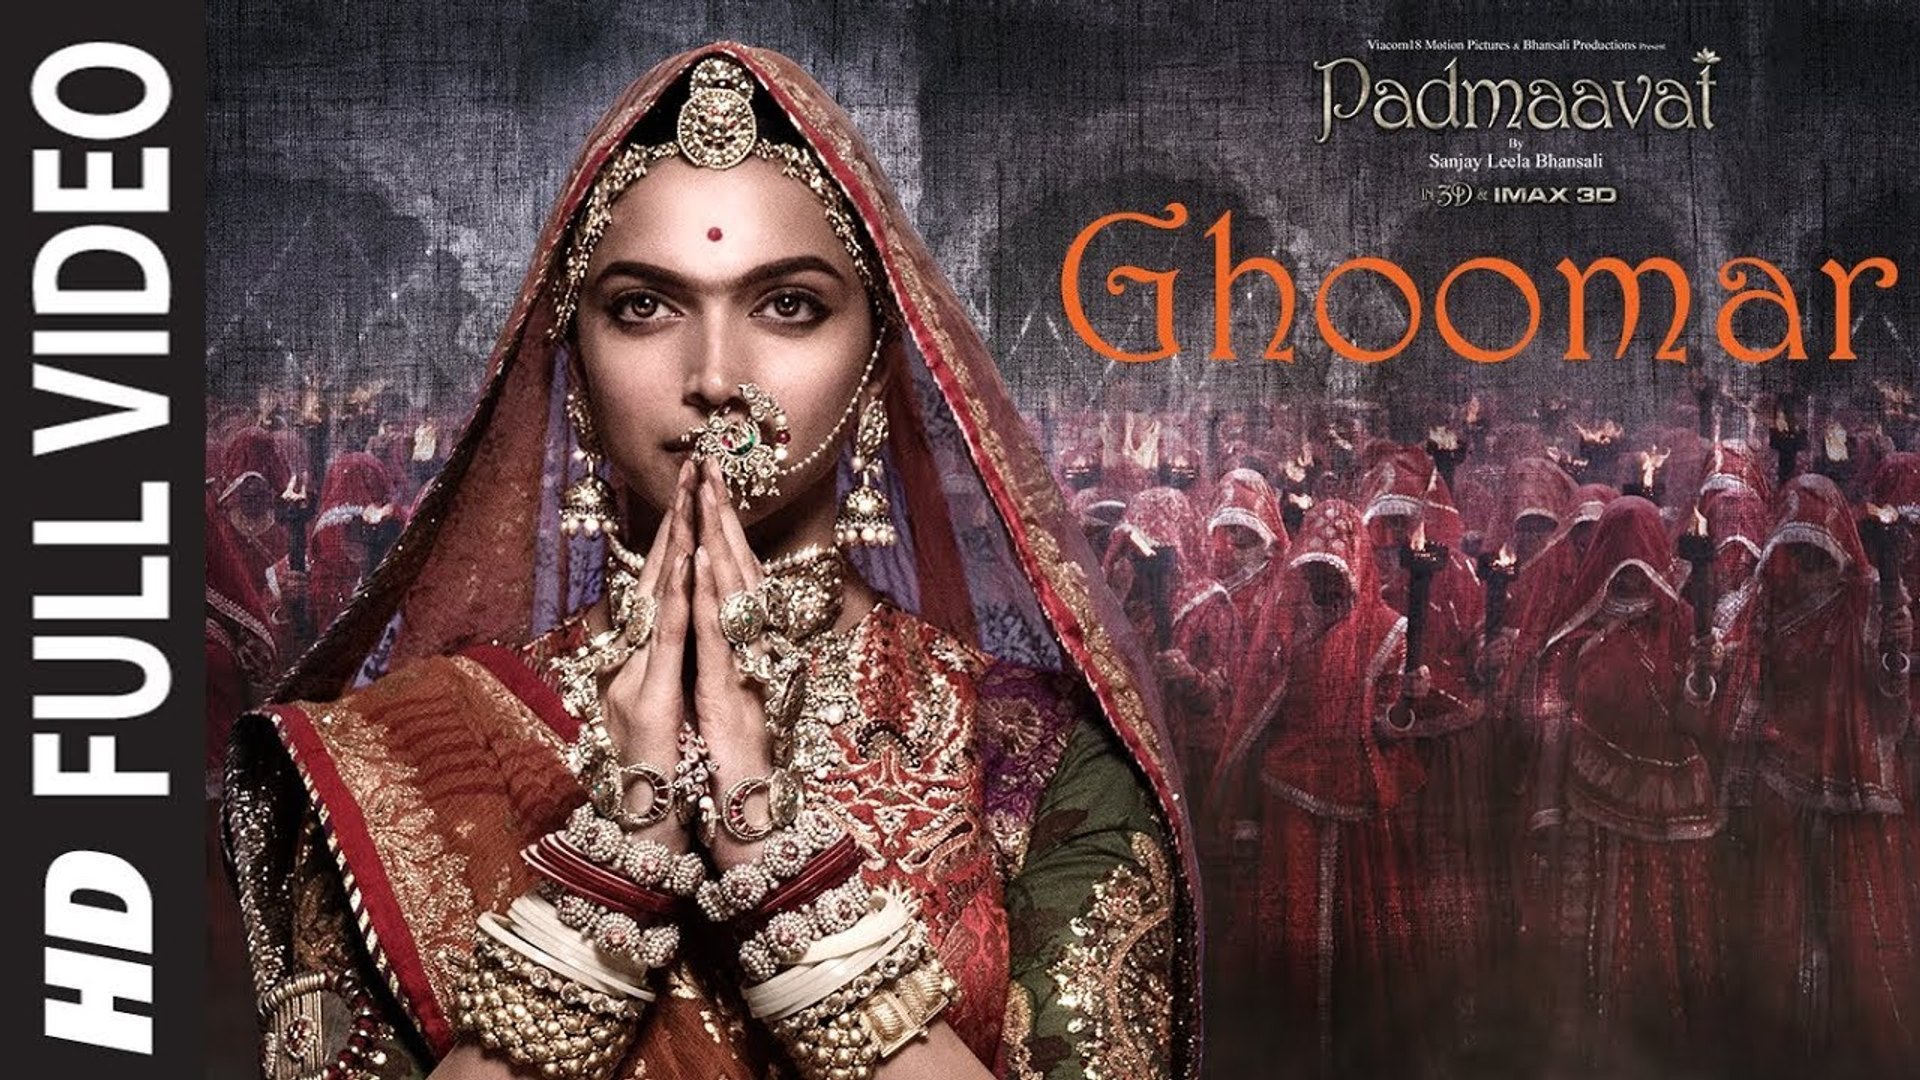 Full Video:Ghoomar|Padmaavat|Deepika Padukone Shahid Kapoor Ranveer  Singh|Shreya Ghoshal SwaroopKhan - video Dailymotion